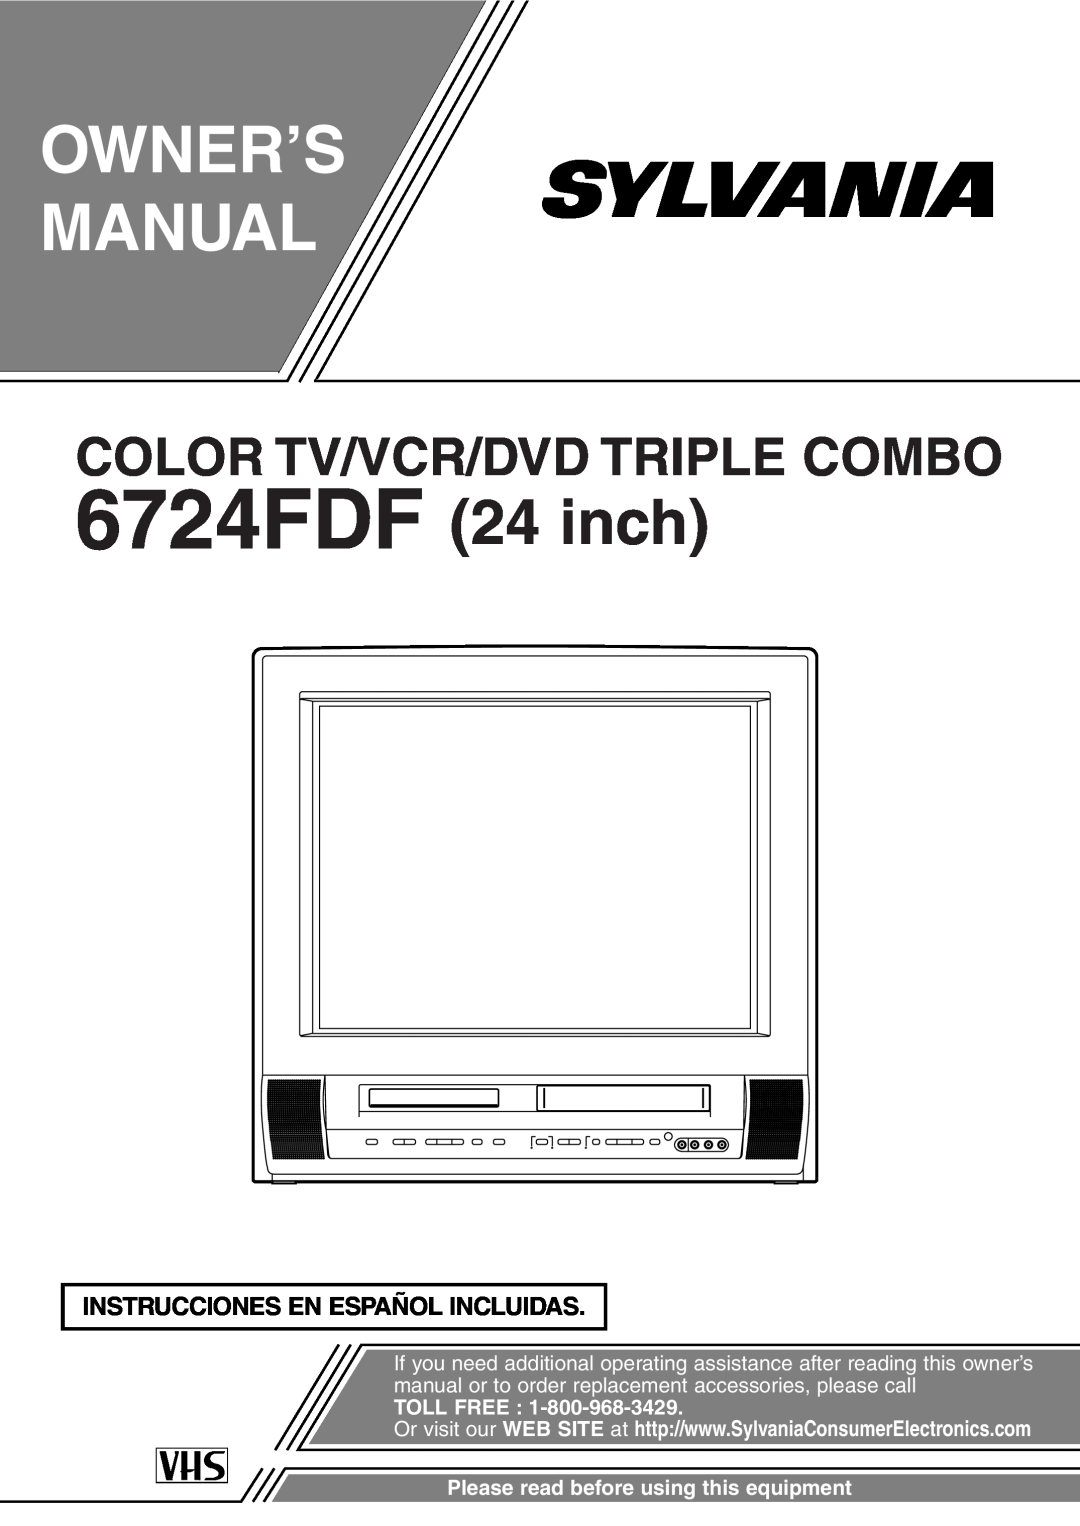 Sylvania owner manual Instrucciones En Español Incluidas, Owner’S Manual, 6724FDF 24 inch, Toll Free 